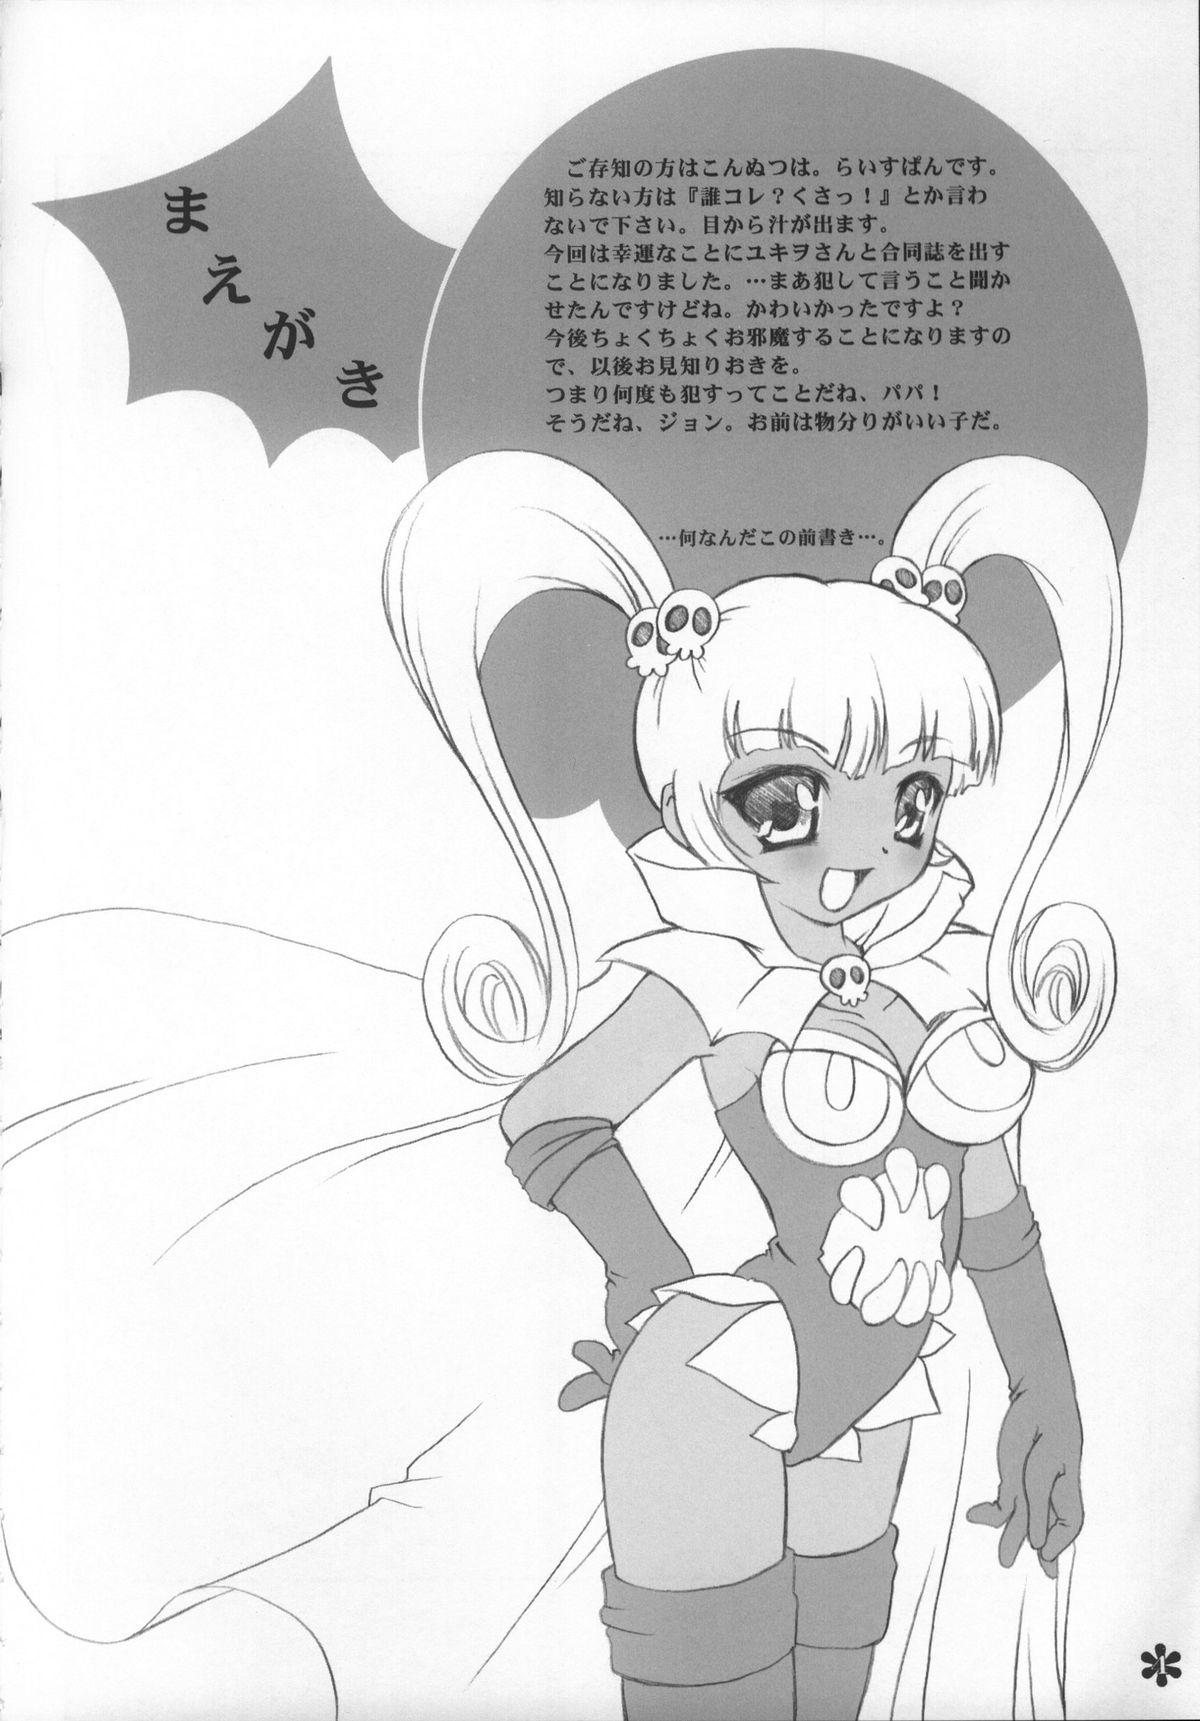 Famosa Doki Doki - Petite princess yucie Cosplay - Page 3